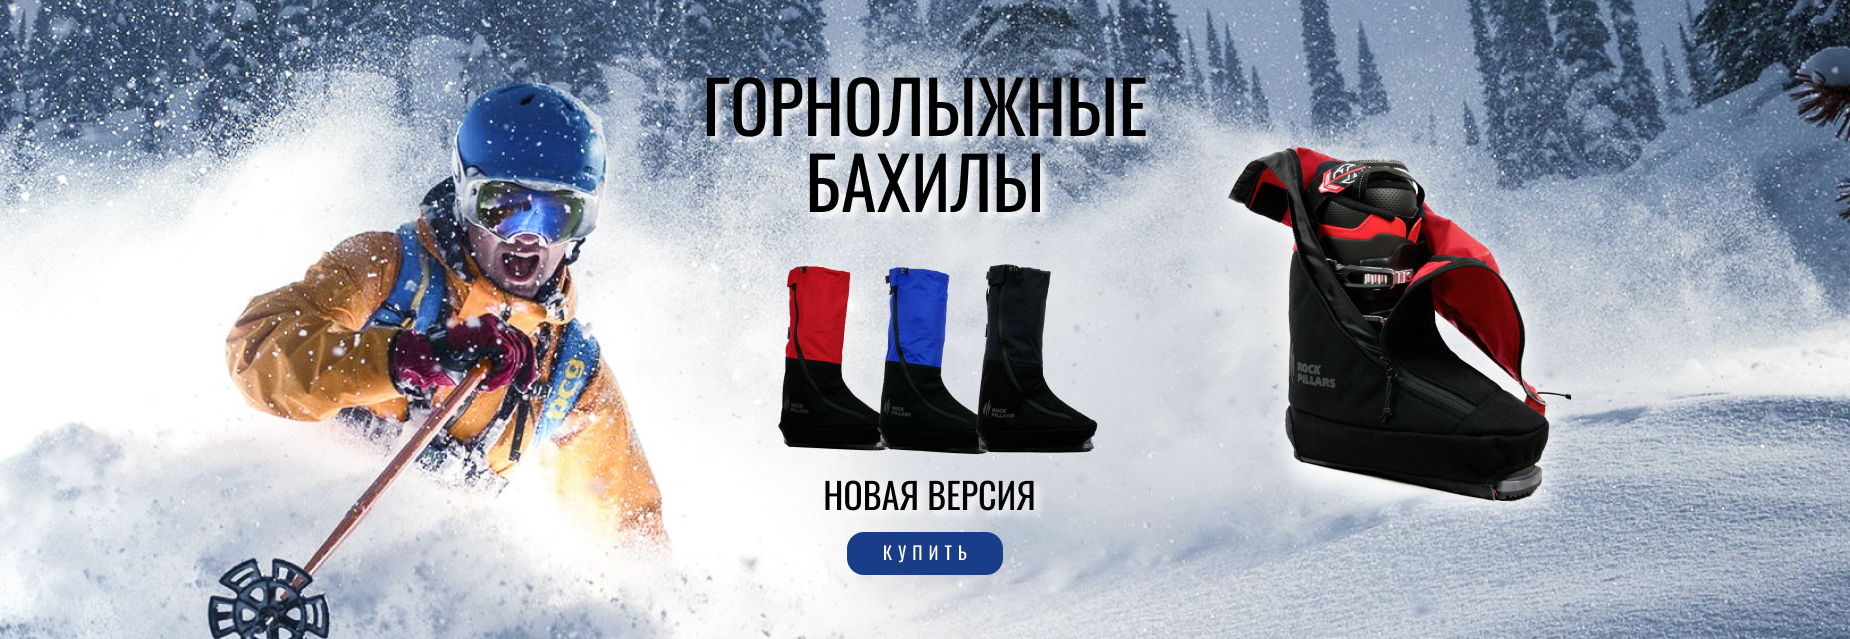 Одежда и снаряжение для детей и взрослых высокого качества с быстройдоставкой от магазина abalak.ru